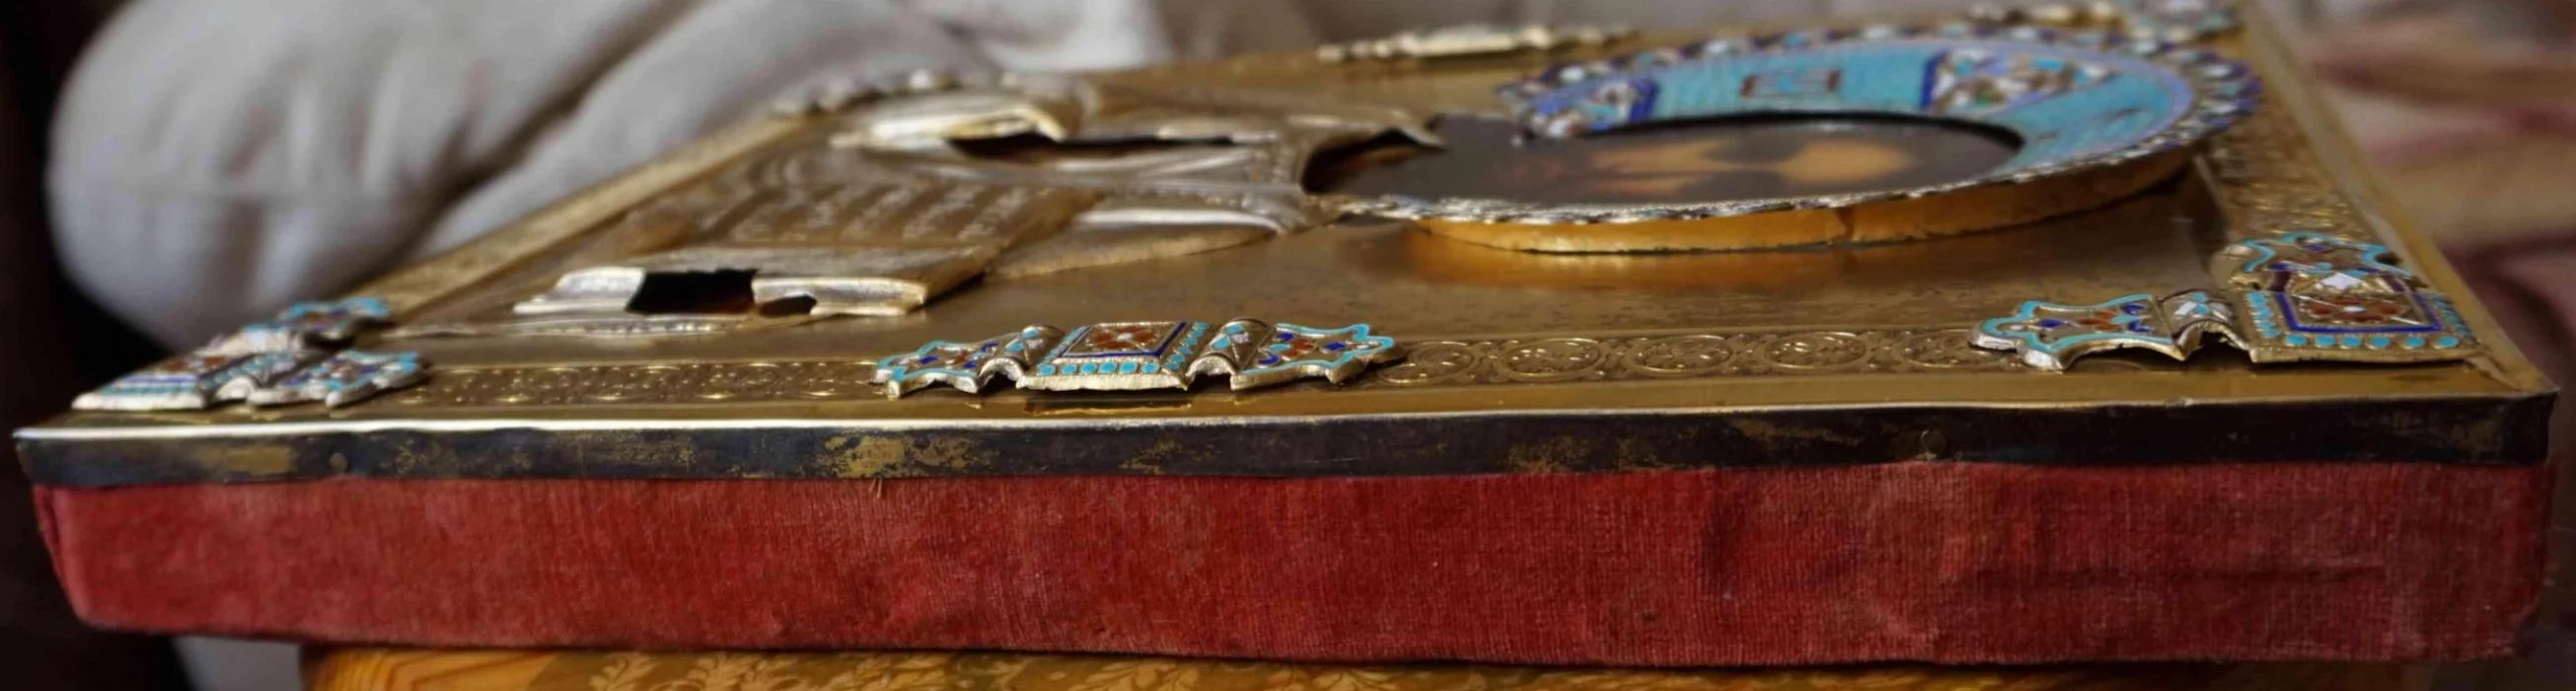 Старинный образ «Господь Вседержитель» в серебряном окладе и оригинальном киоте. Москва, конец XIX в. 